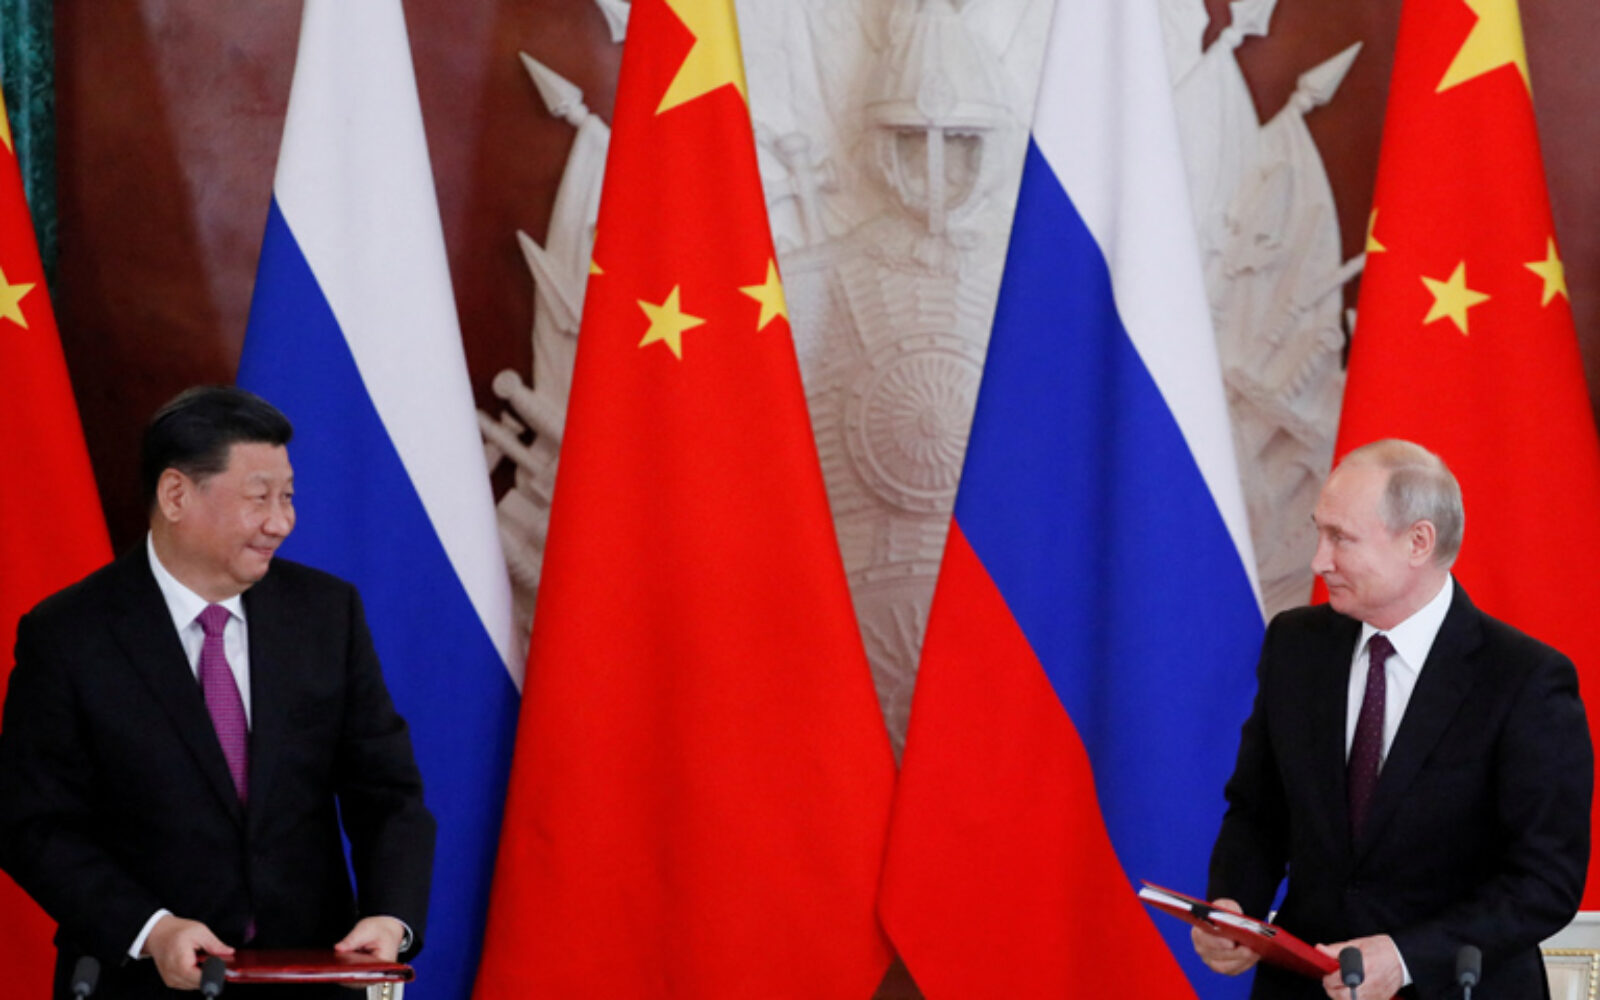 Breme sankcija Rusiji će olakšati Kina kroz kredite i kupnju nafte i plina  - Poslovni dnevnik